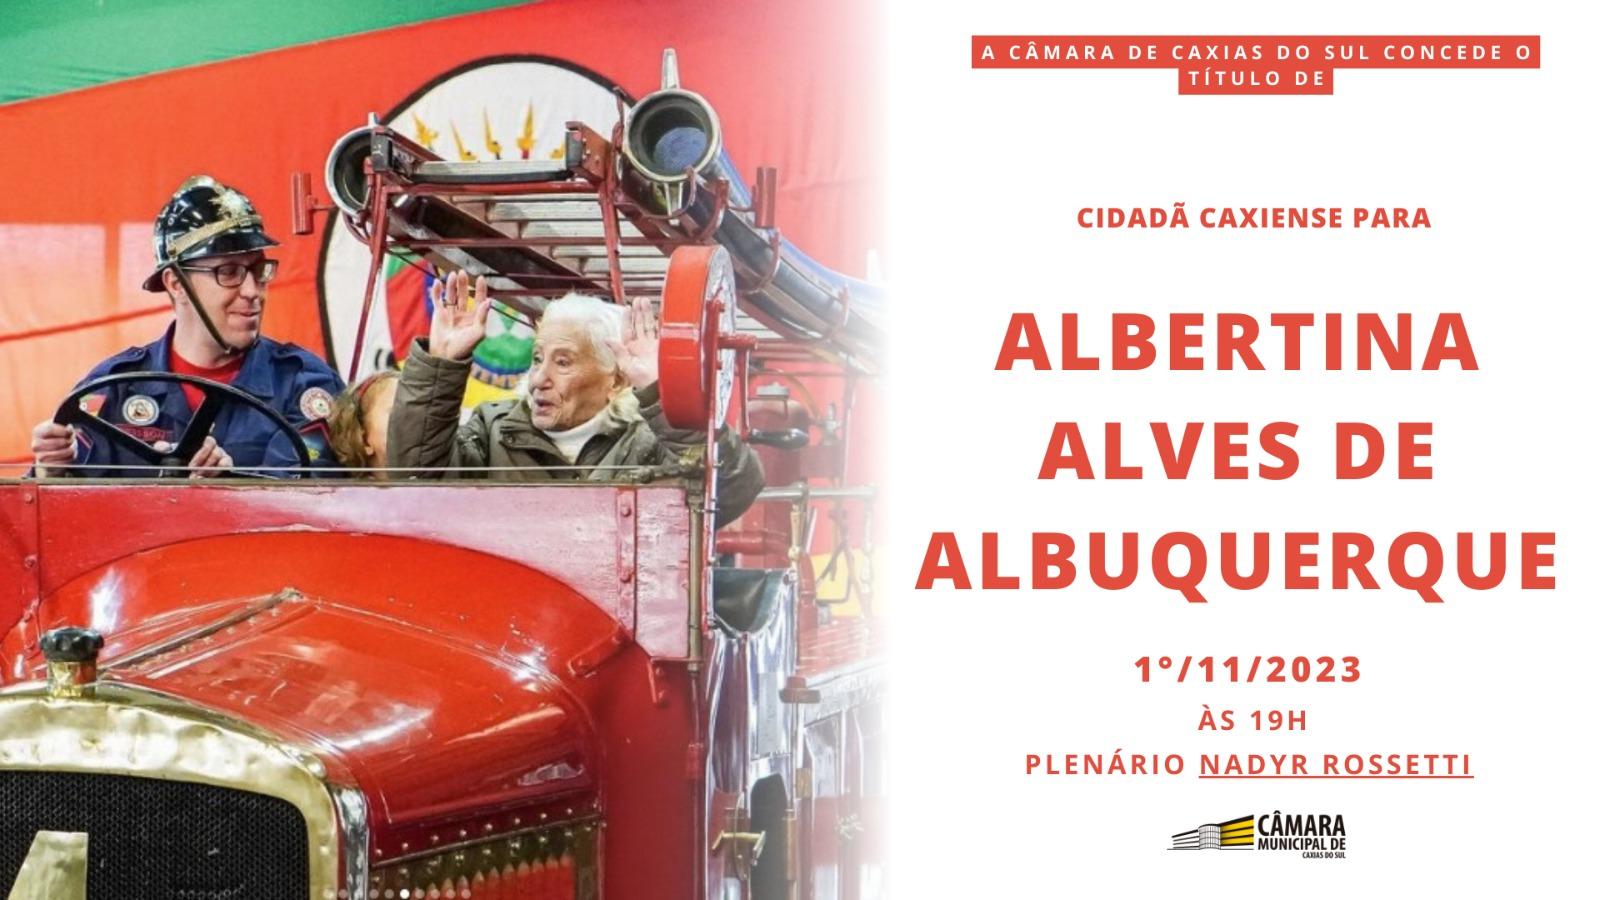 Albertina Alves de Albuquerque será Cidadã Caxiense 